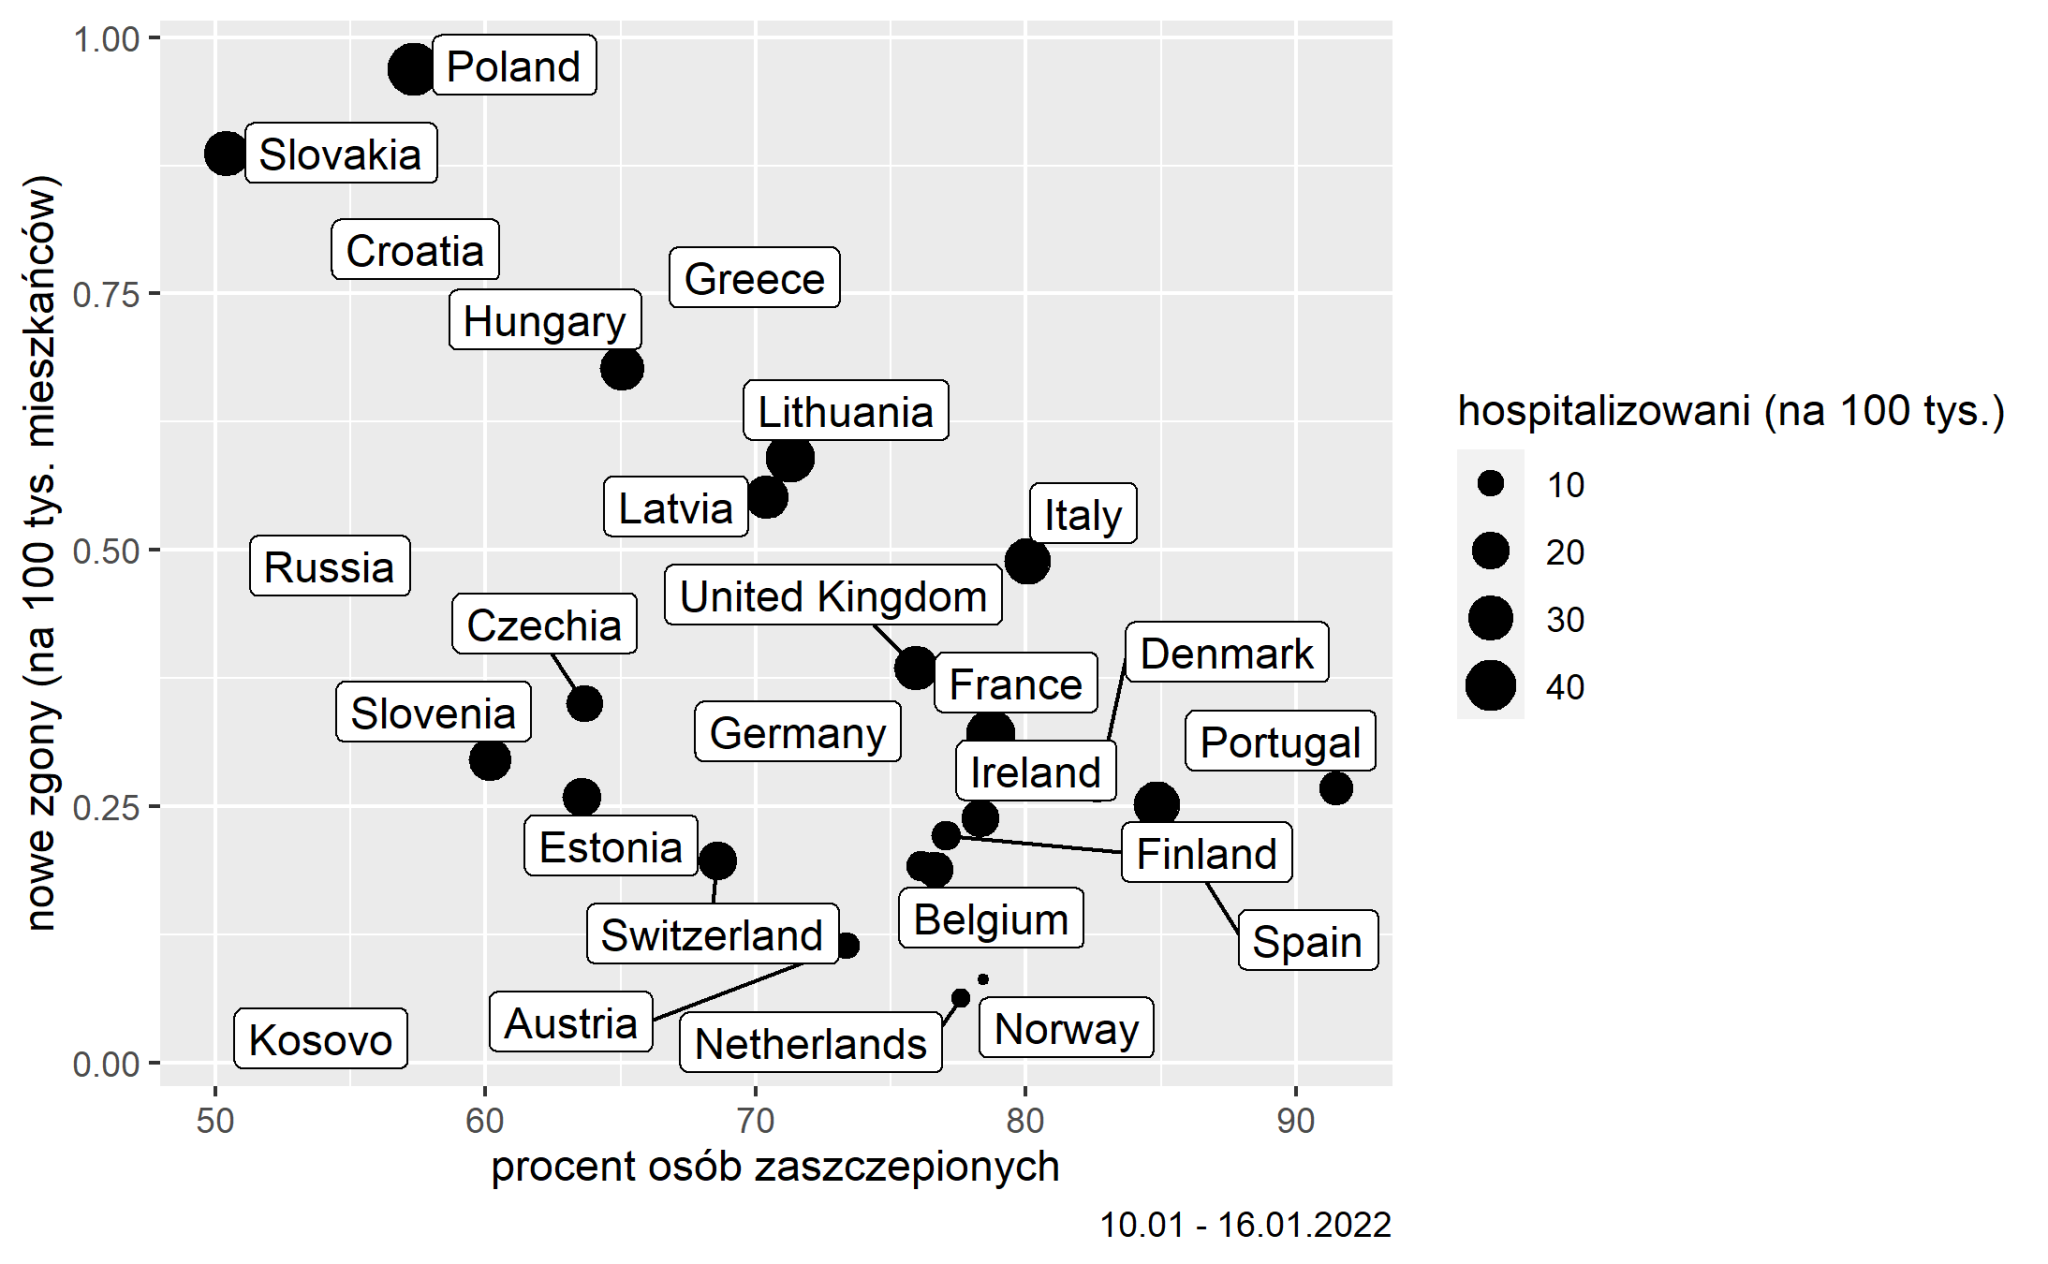 Analiza zależności między odsetkiem osób zaszczepionych na COVID-19 od liczby zgonów i liczby osób hospitalizowanych z powodu COVID-19 w krajach Europejskich powyżej miliona mieszkańców (dane z okresu 10-16 stycznia 2022)